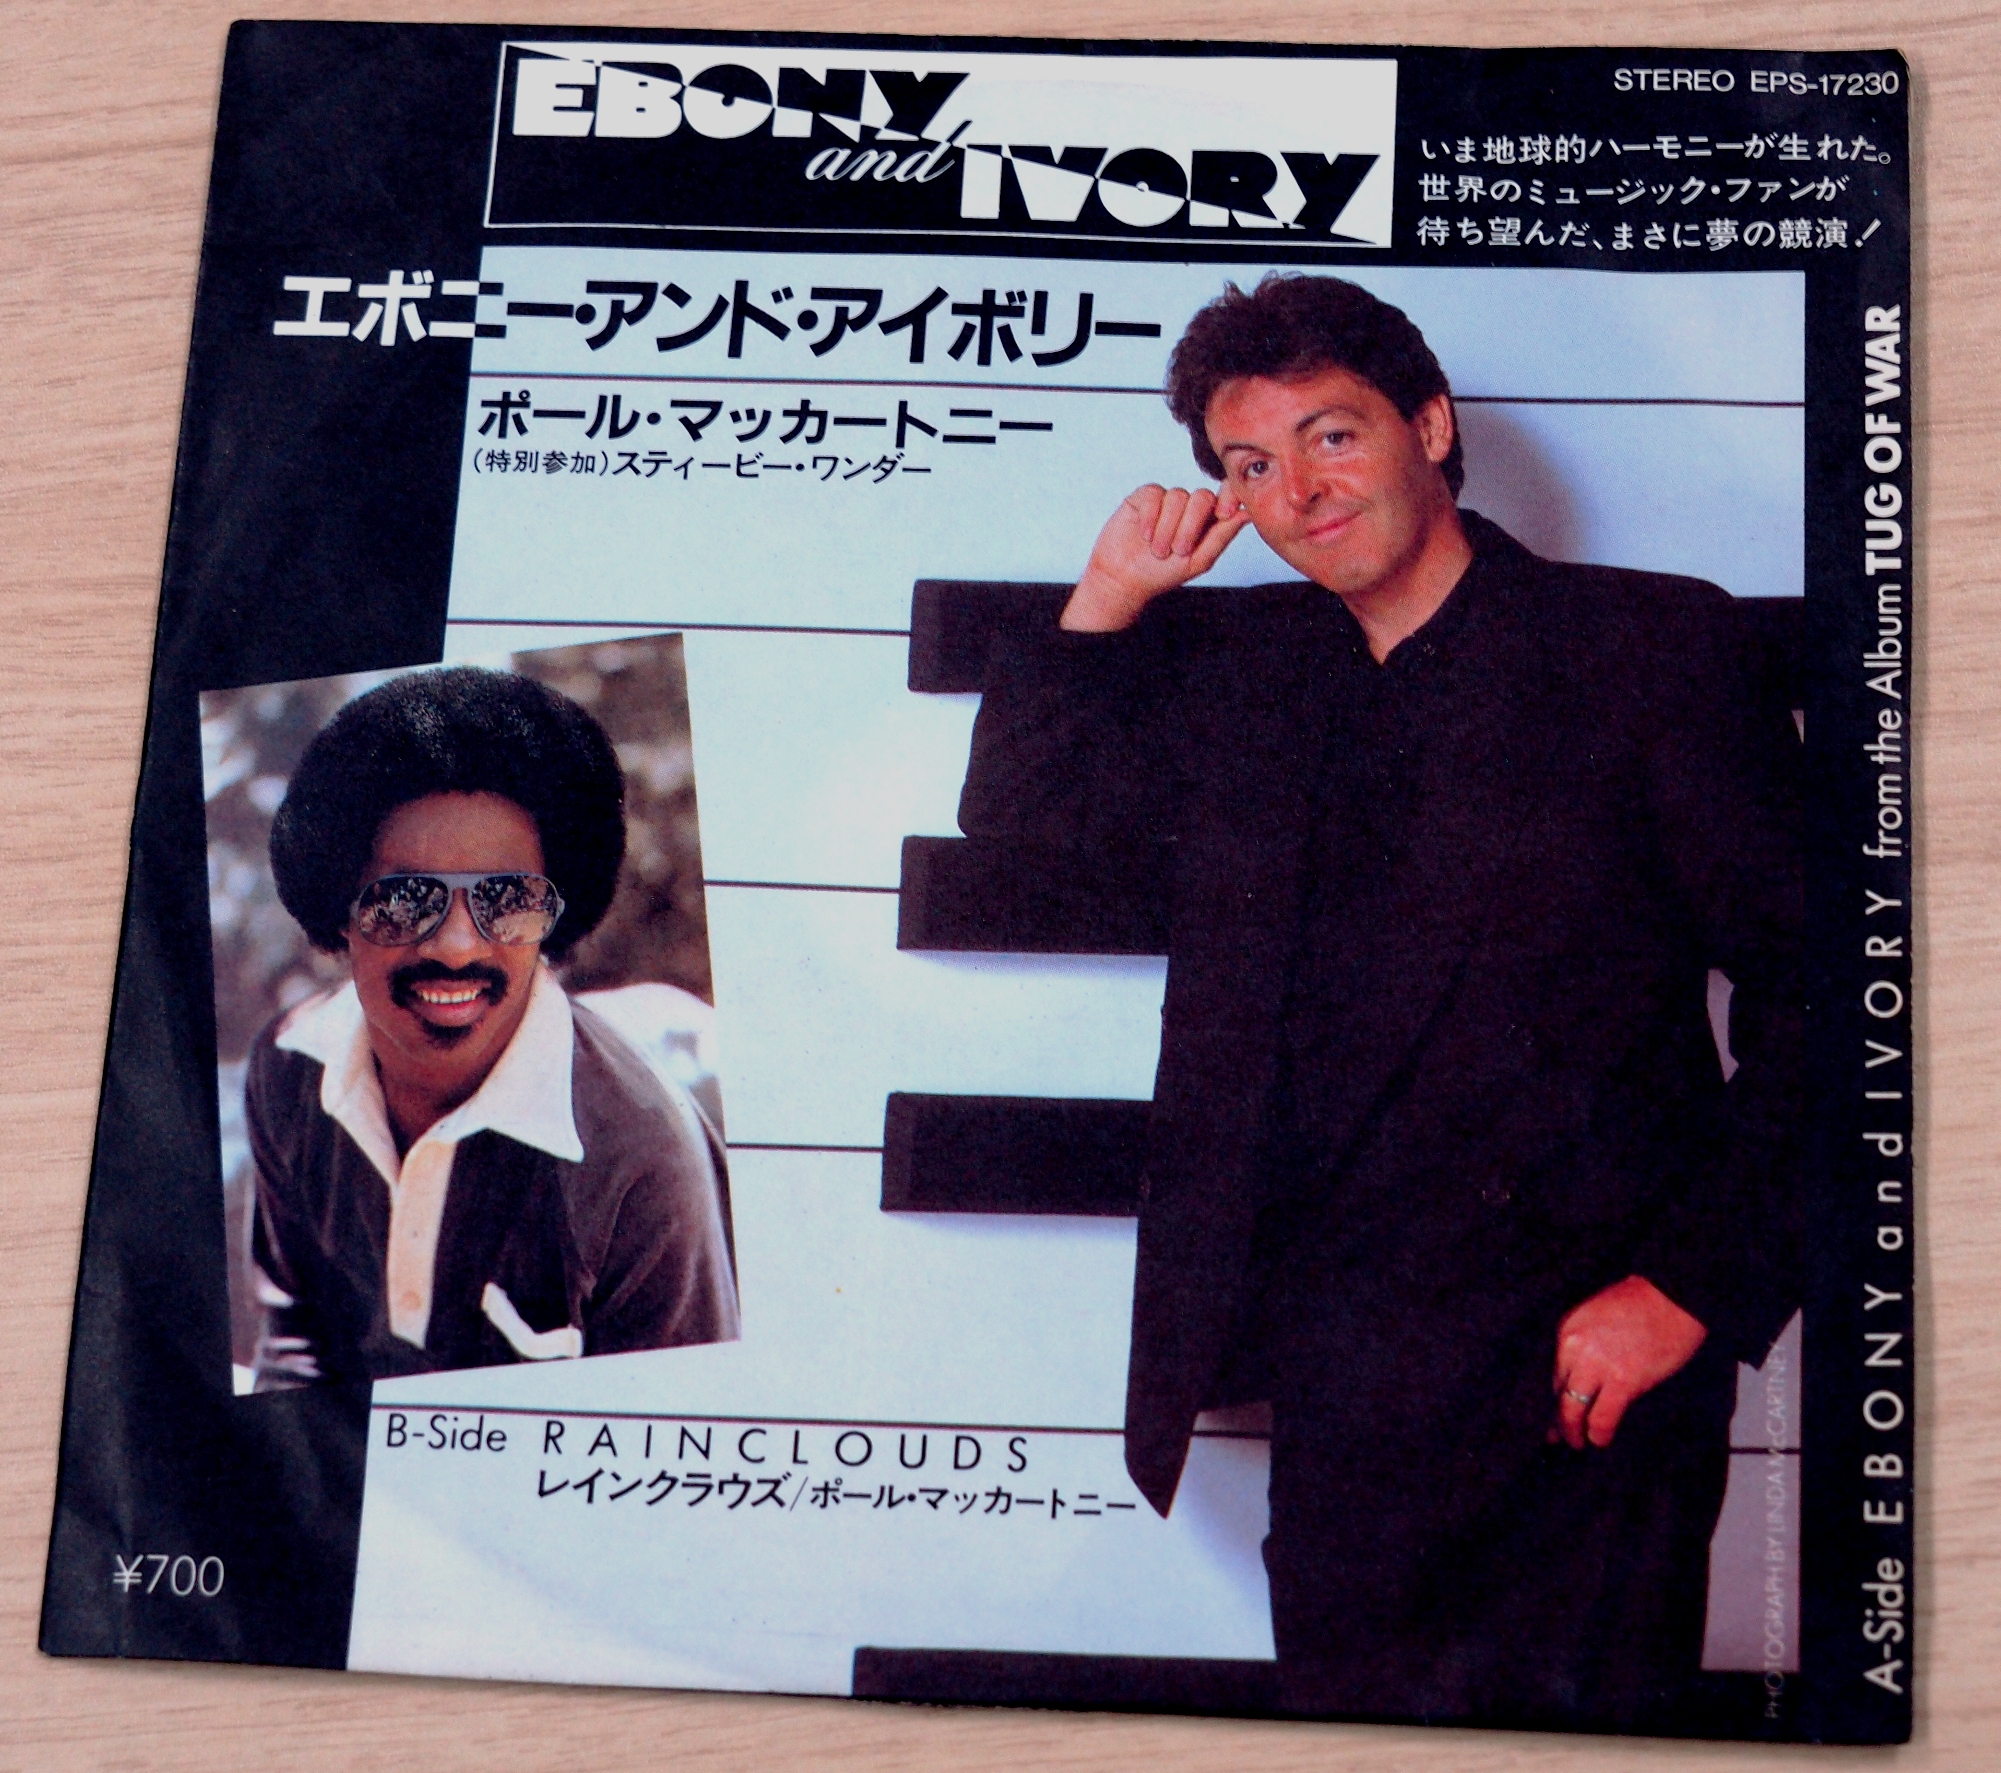 スティービー・ワンダーと共演した「エボニー・アンド・アイボリー」の日本国内シングル盤。